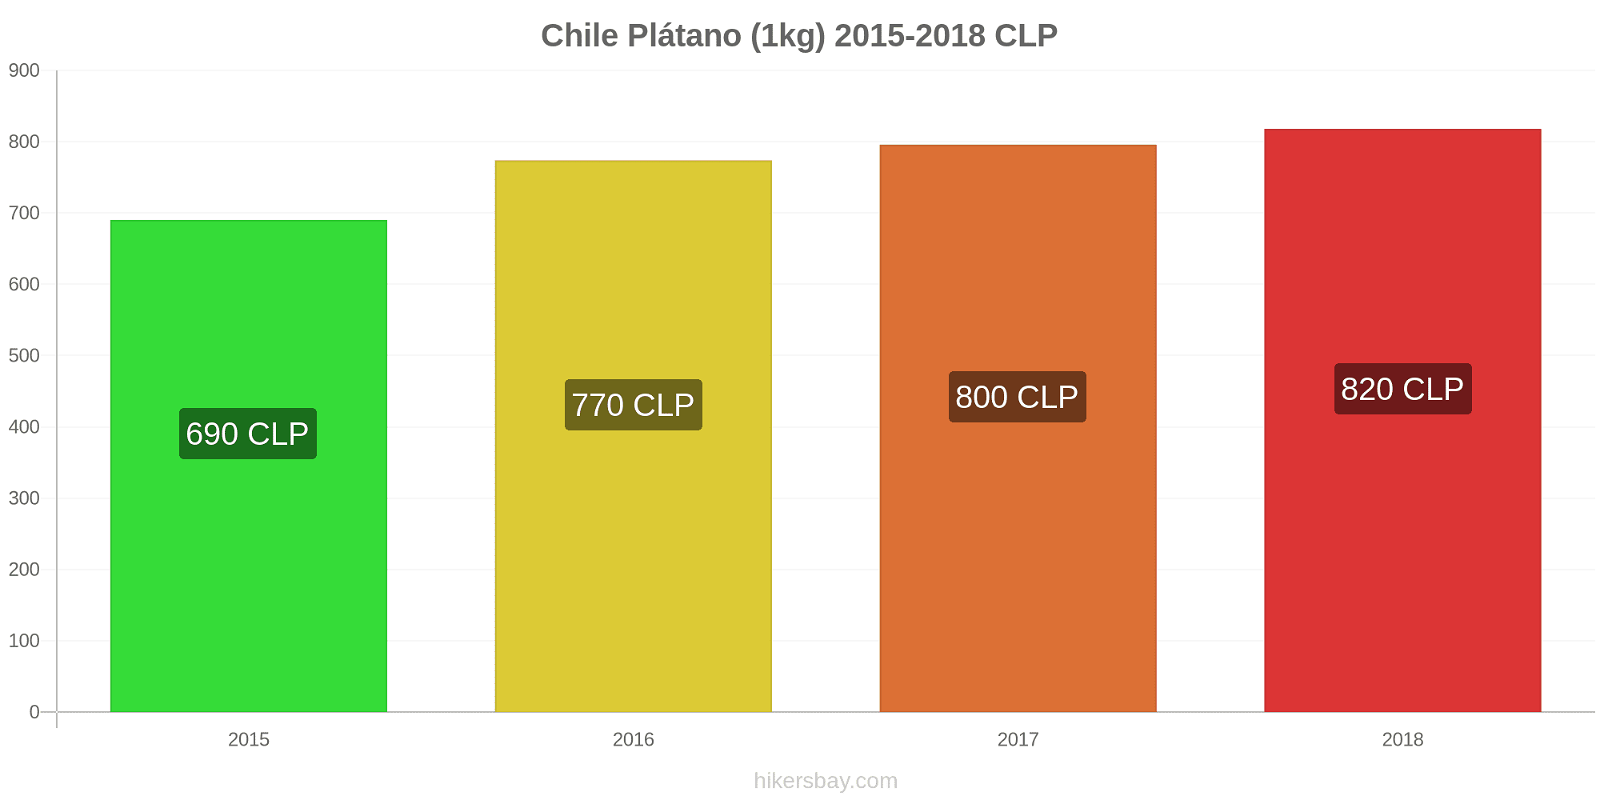 Chile cambios de precios Plátanos (1kg) hikersbay.com